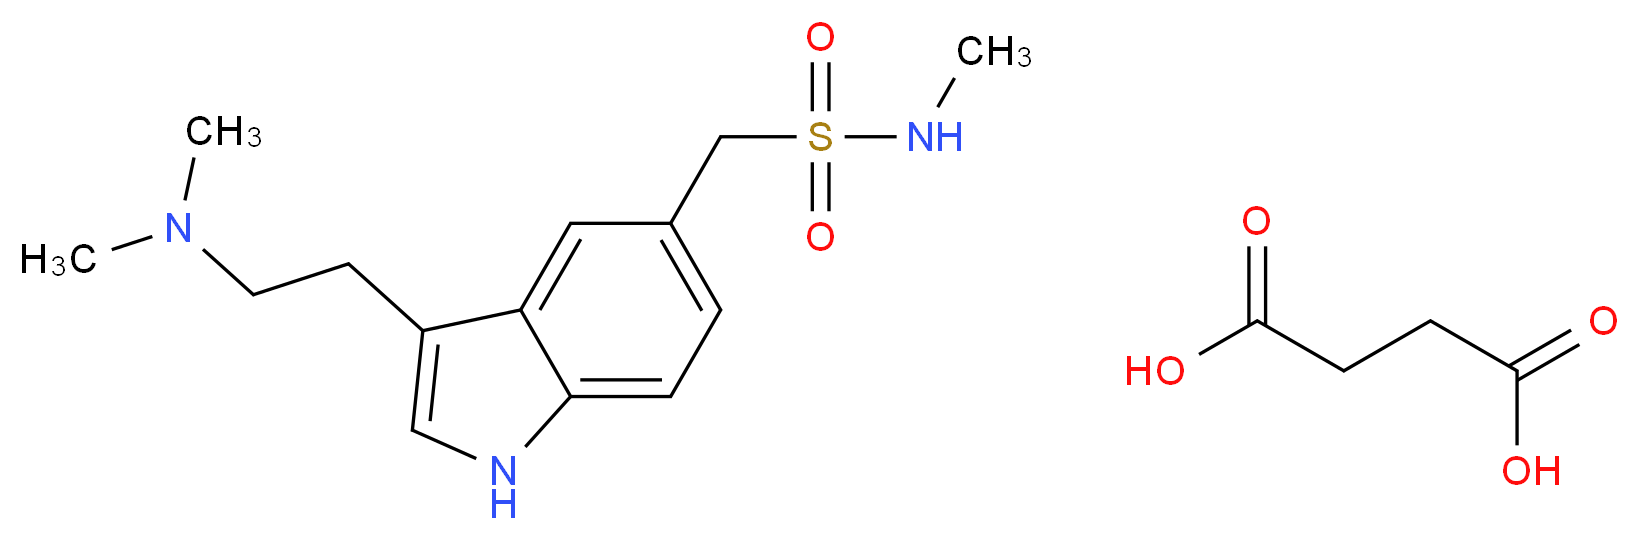 103628-48-4 molecular structure